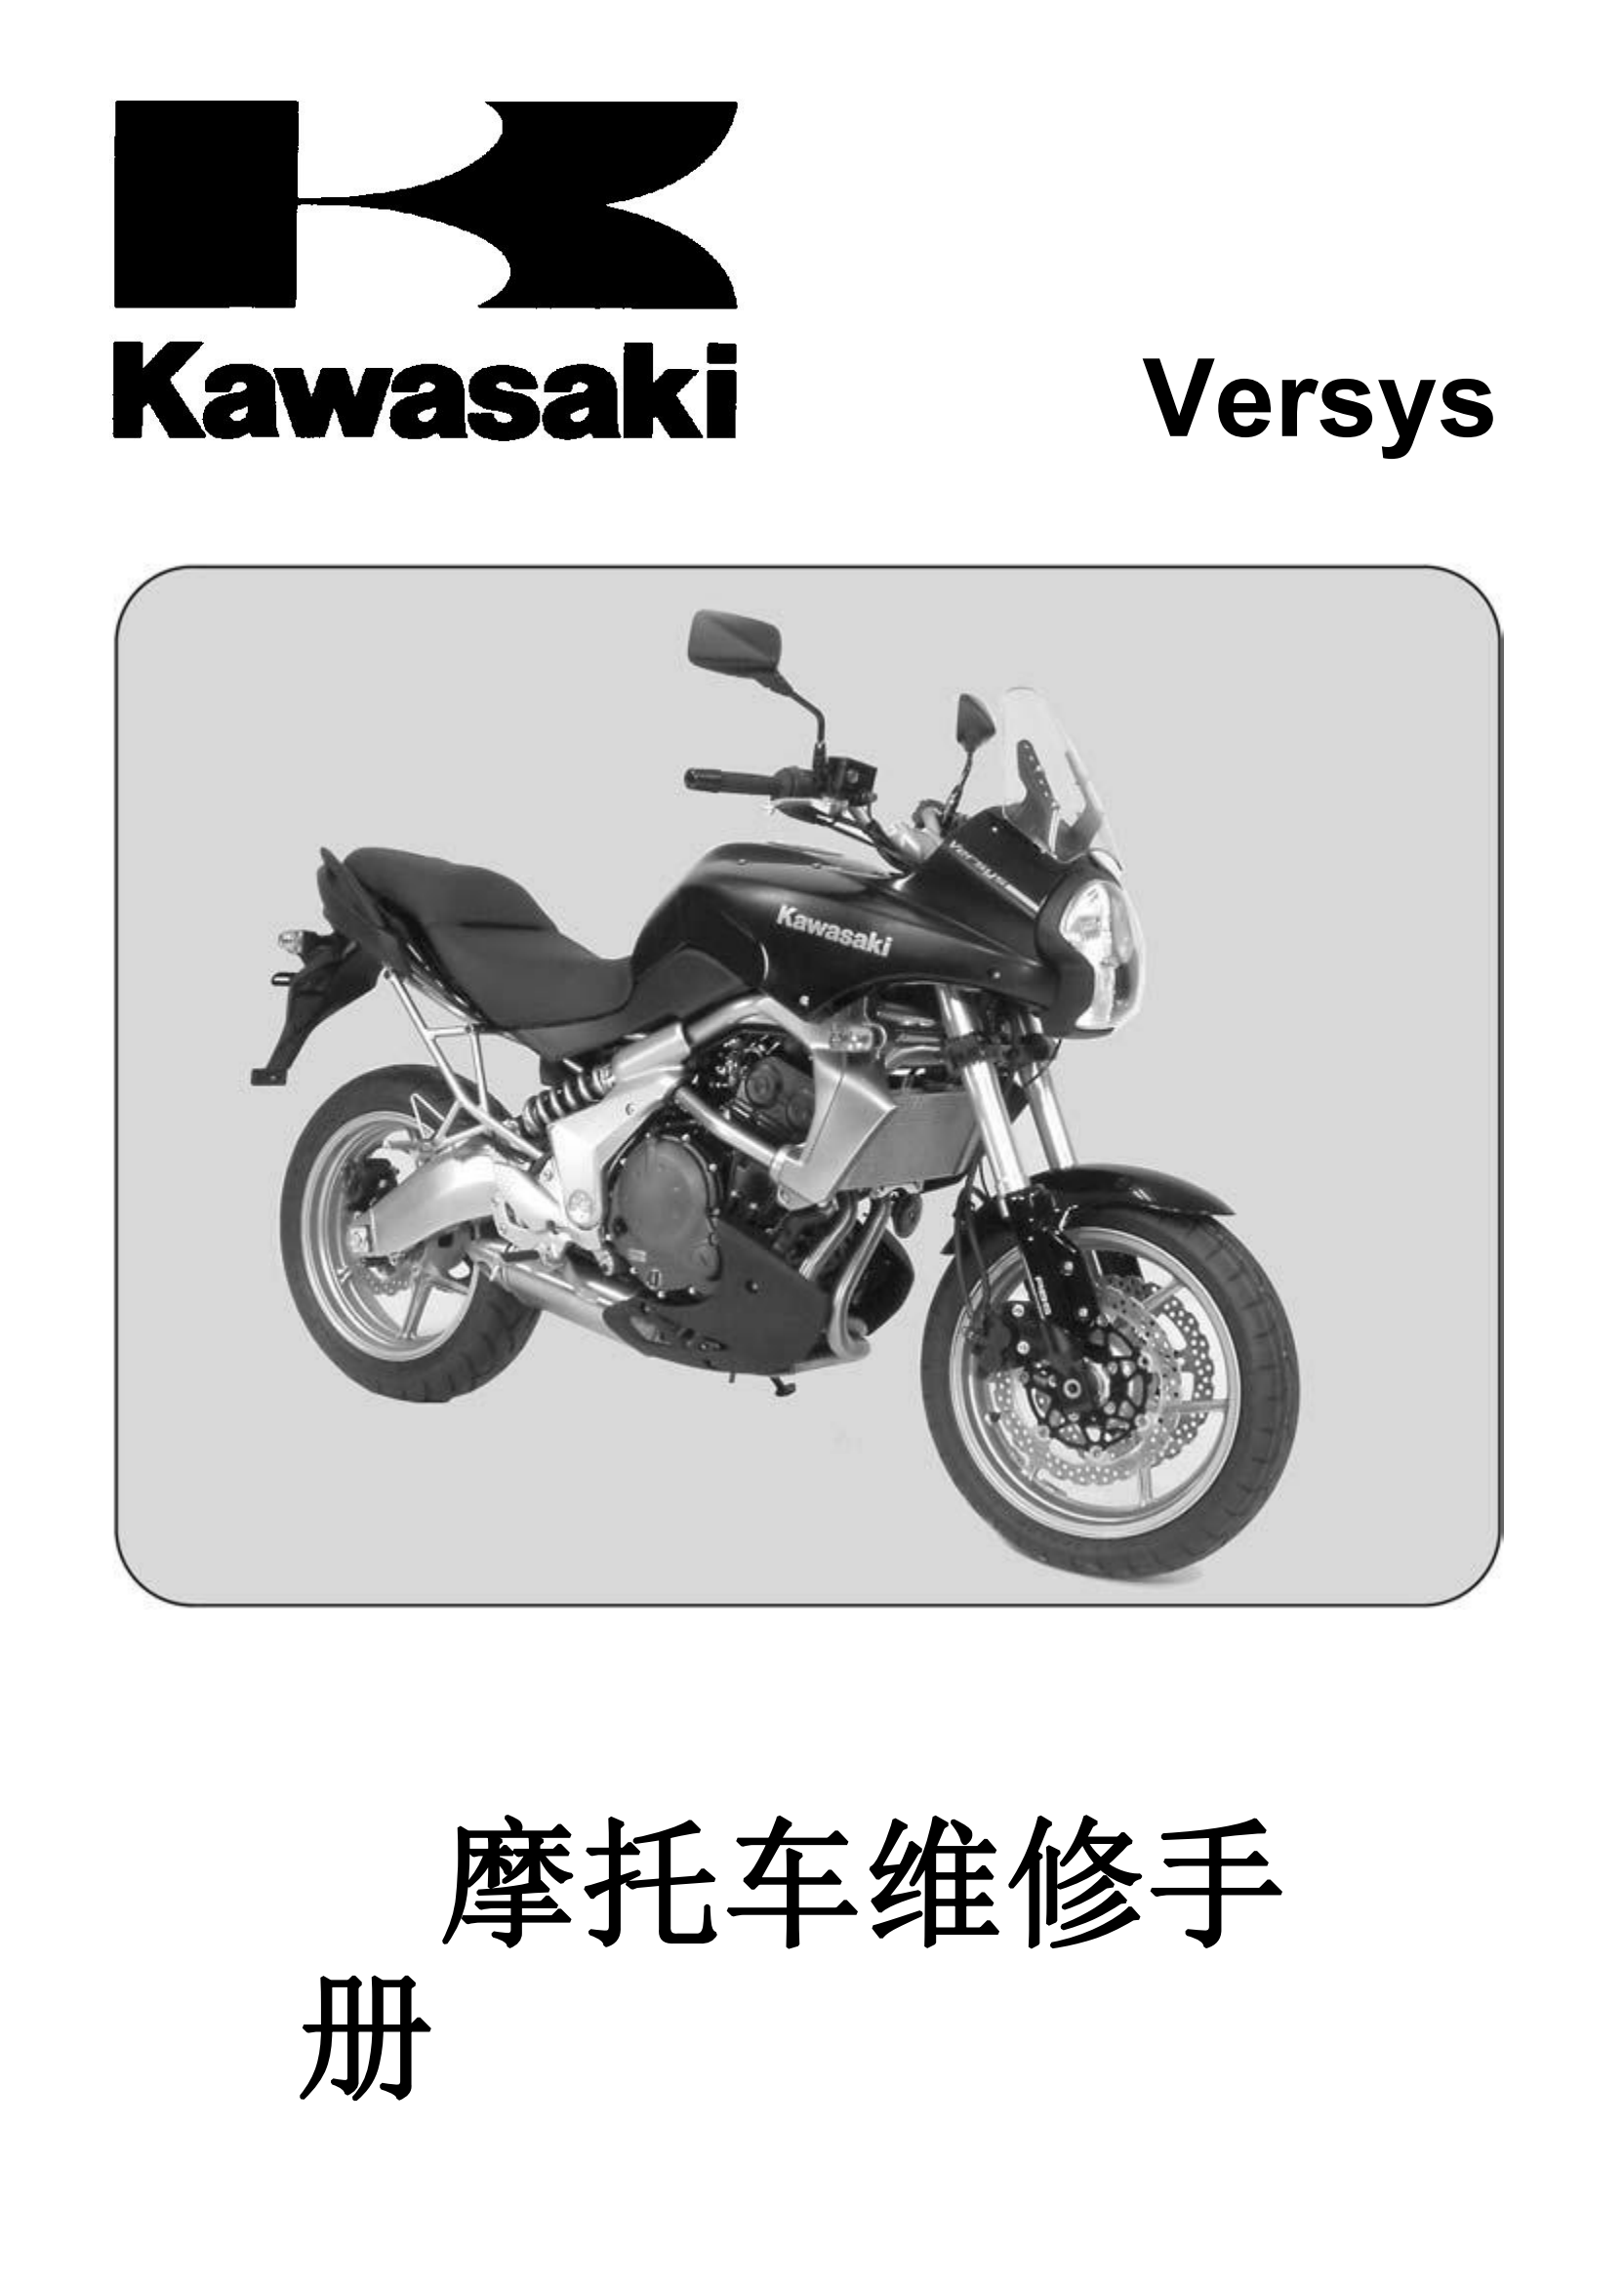 简体中文2007-2009年川崎异兽650 kawasaki versys 650维修手册插图